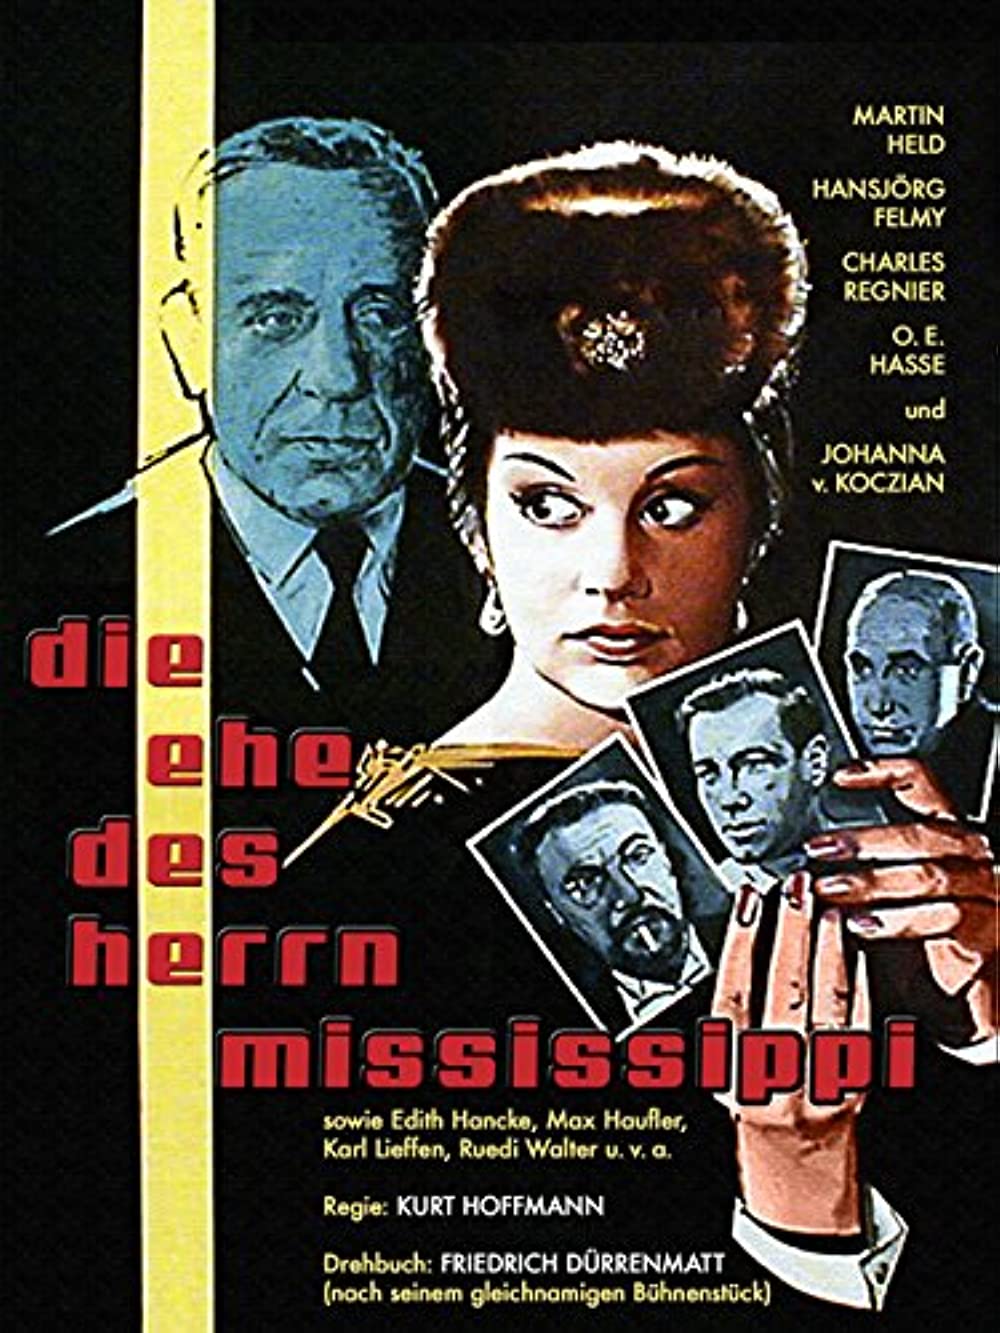 Filmbeschreibung zu Die Ehe des Herrn Mississippi